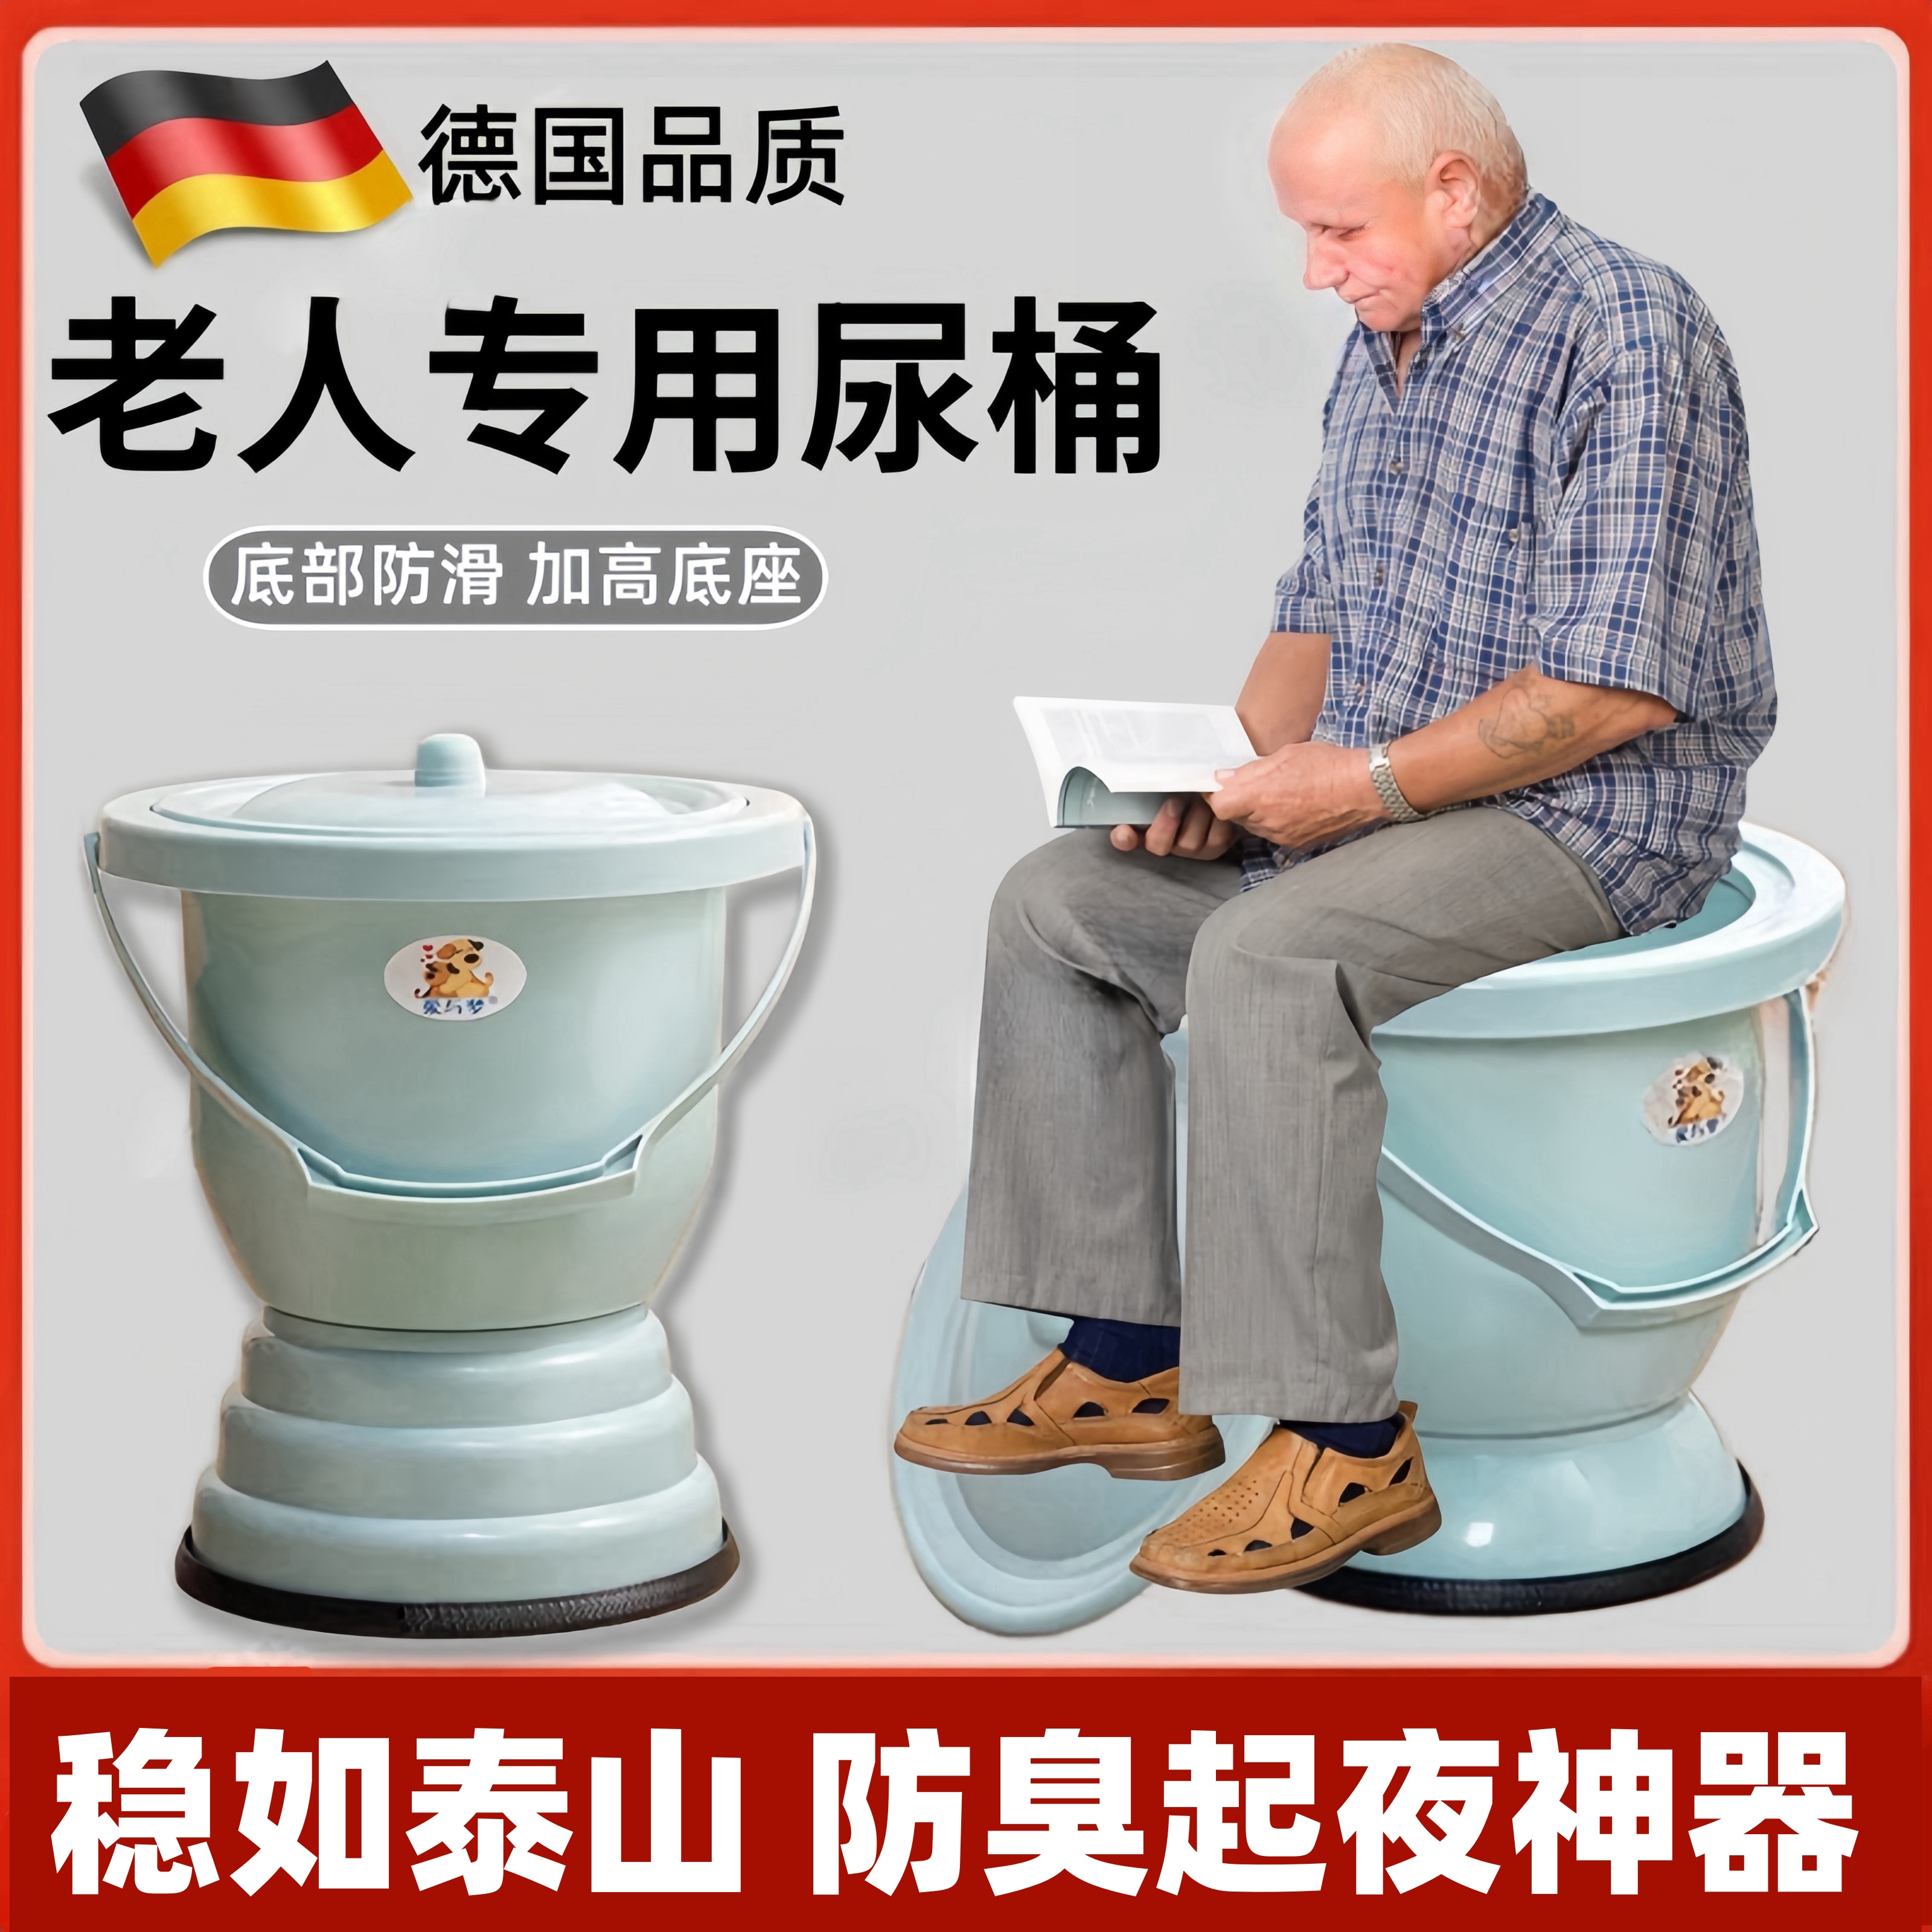 老年人起夜神器农村旱厕坐便器高脚痰盂家用卧室带盖尿桶壶小马桶